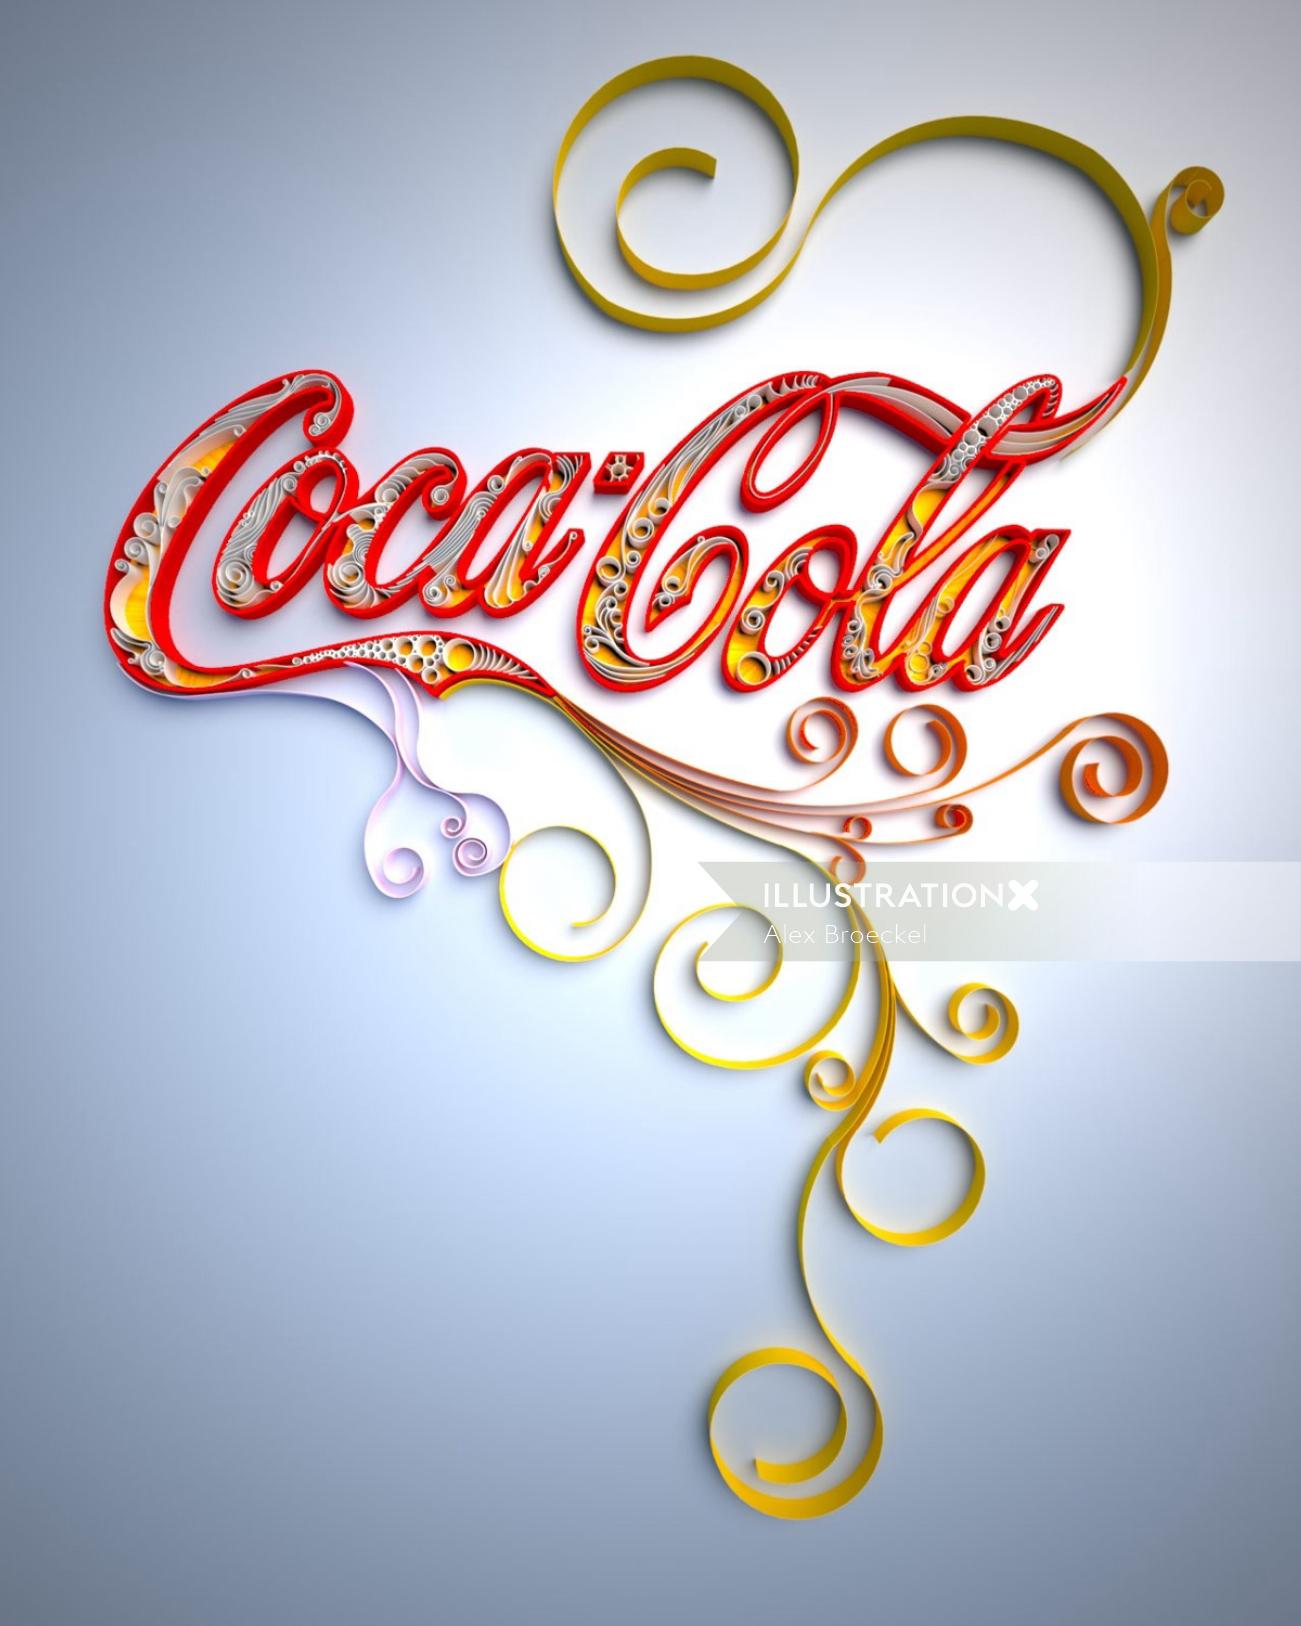 Coca-Cola Lettering Design 